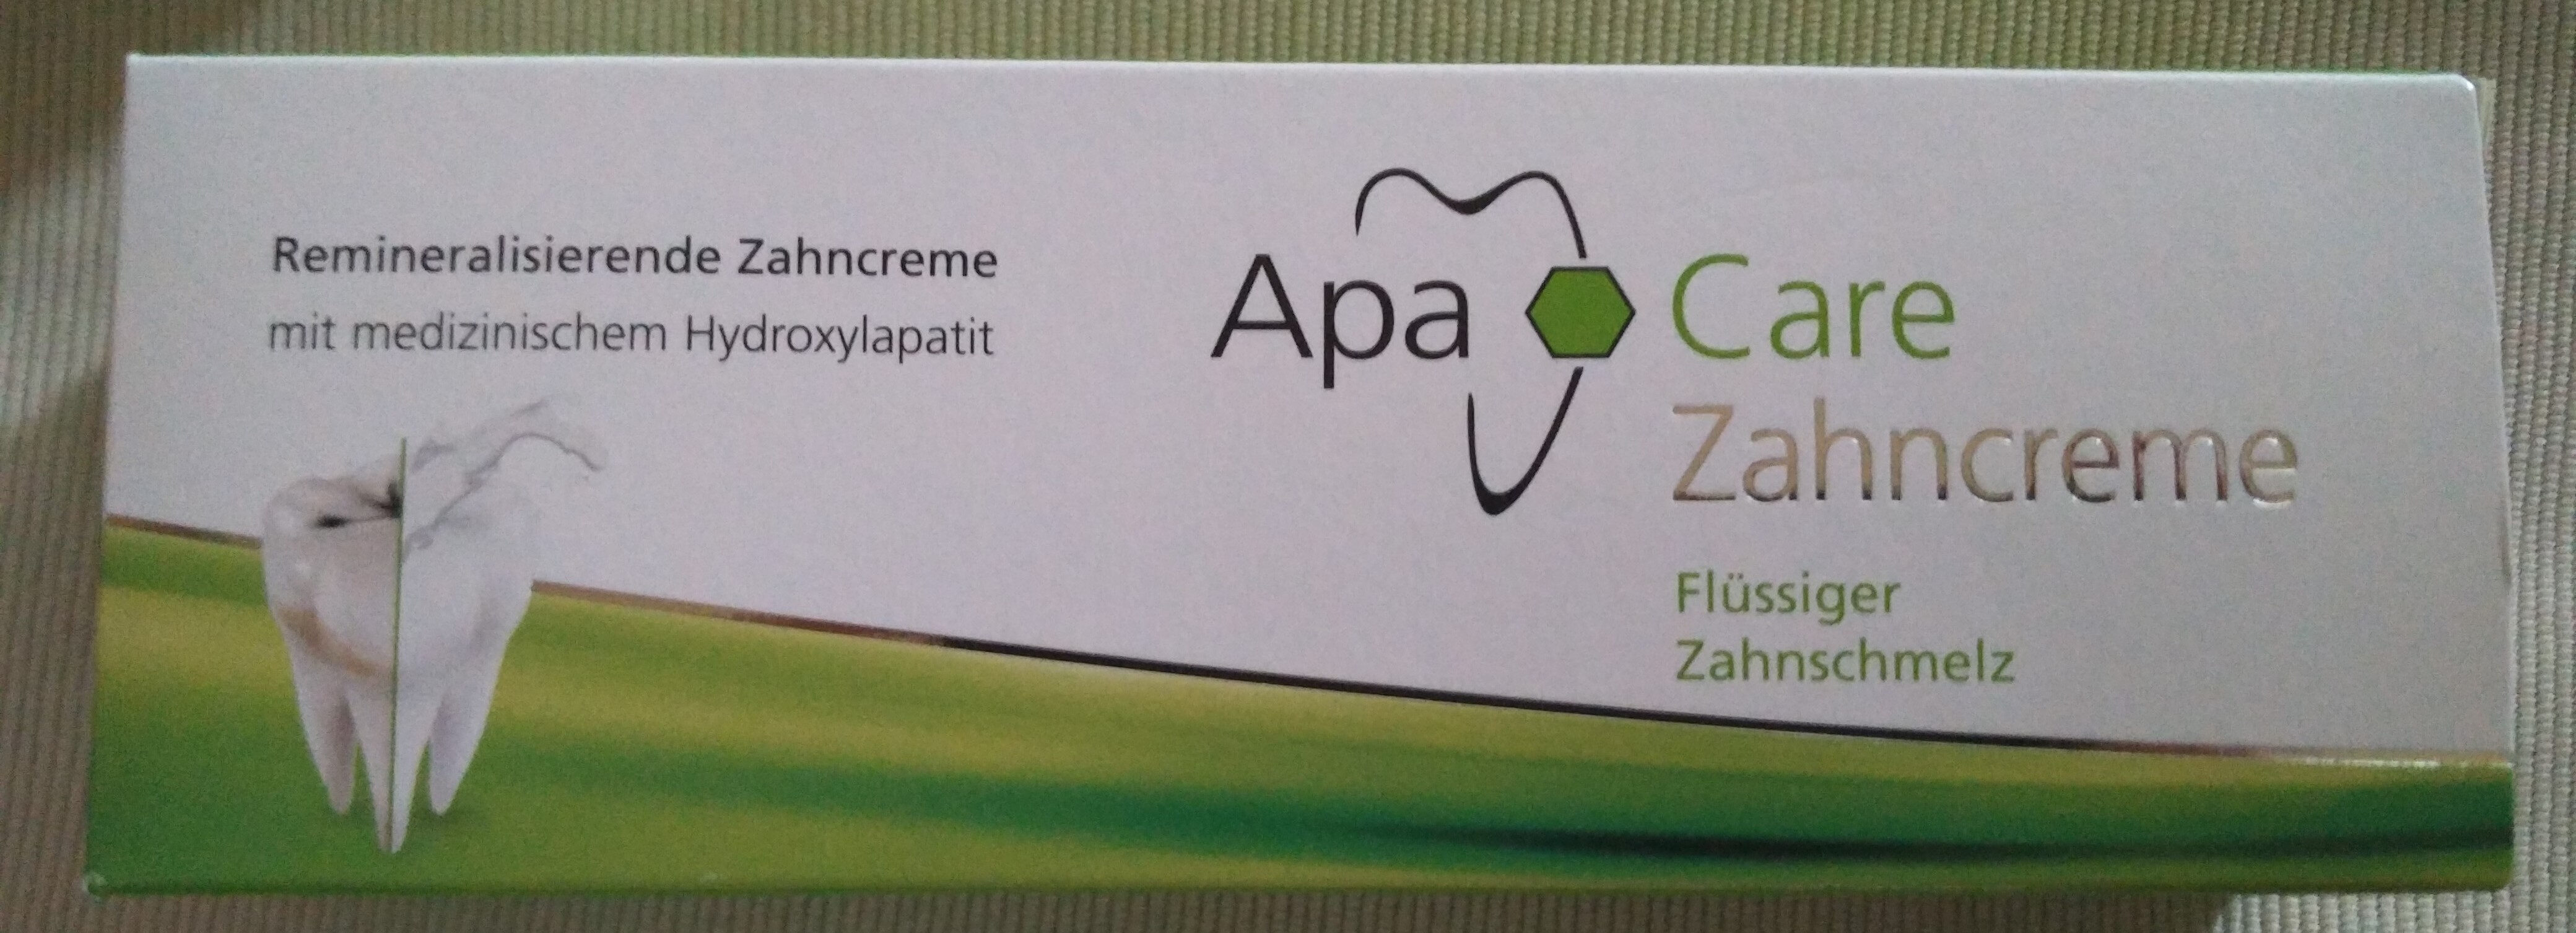 Care Zahncreme (Flüssiger Zahnschmelz) - Produkt - de